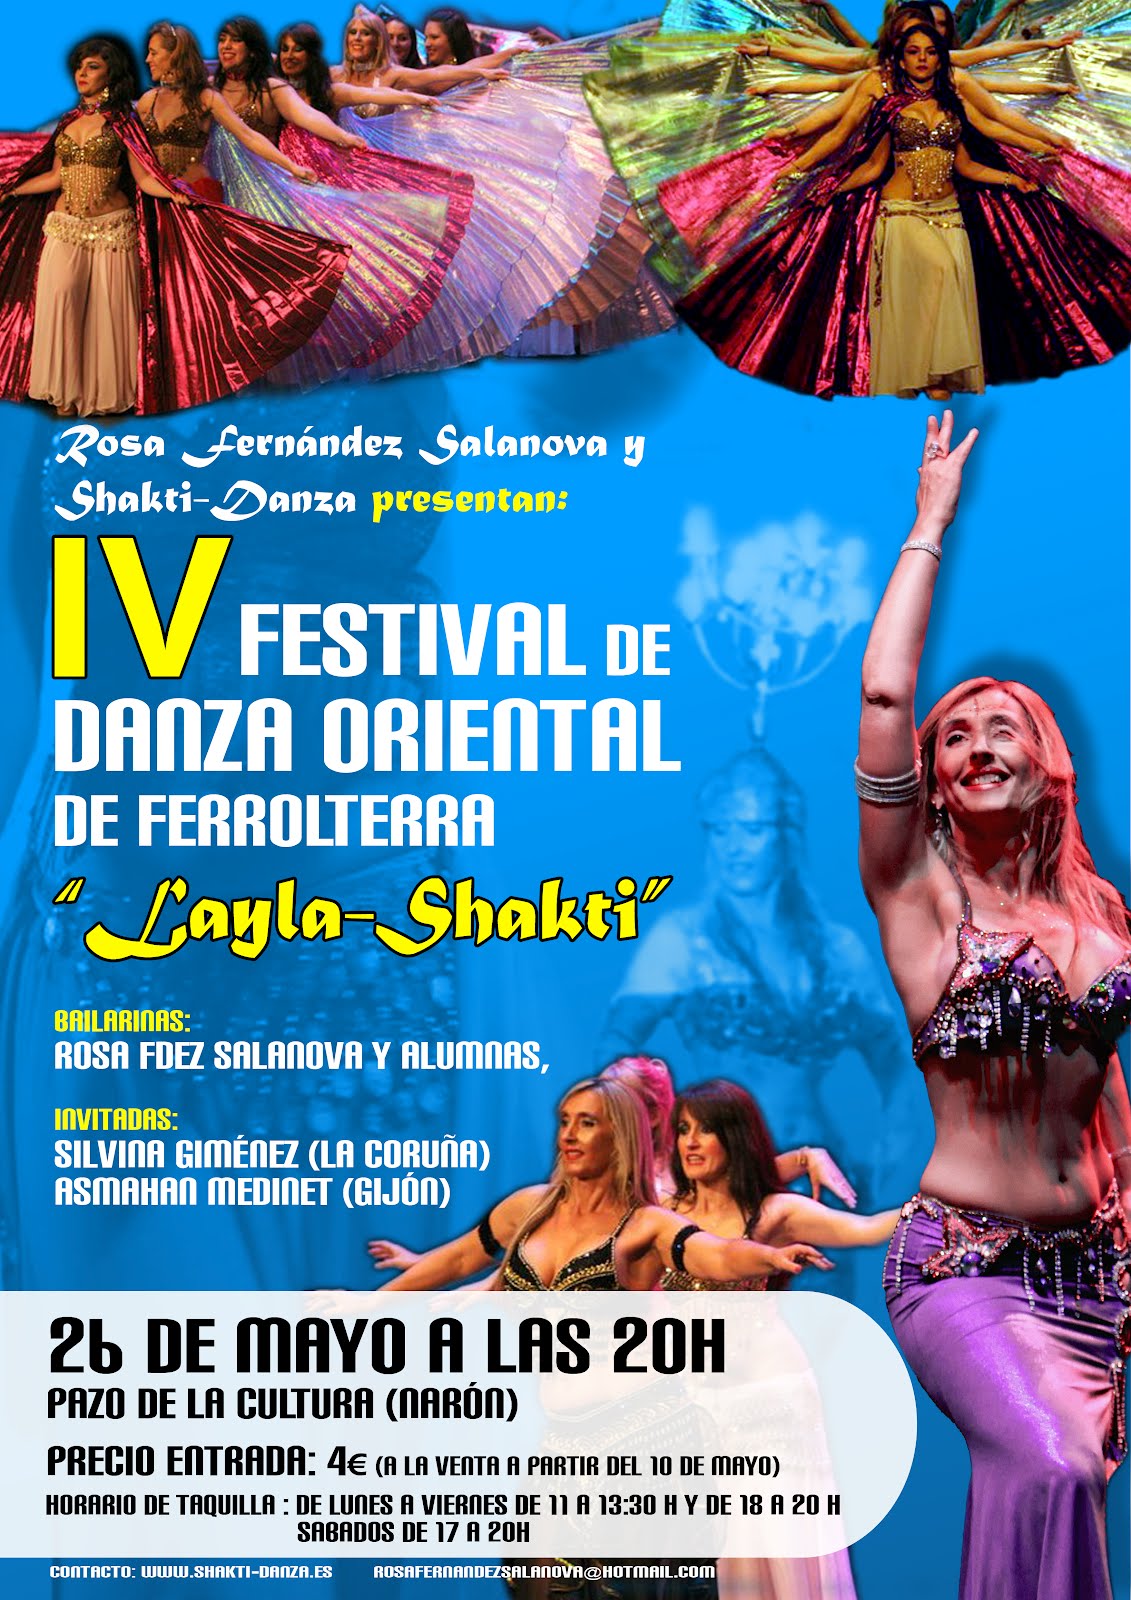 Festival de Danza Oriental "Layla-Shakti"